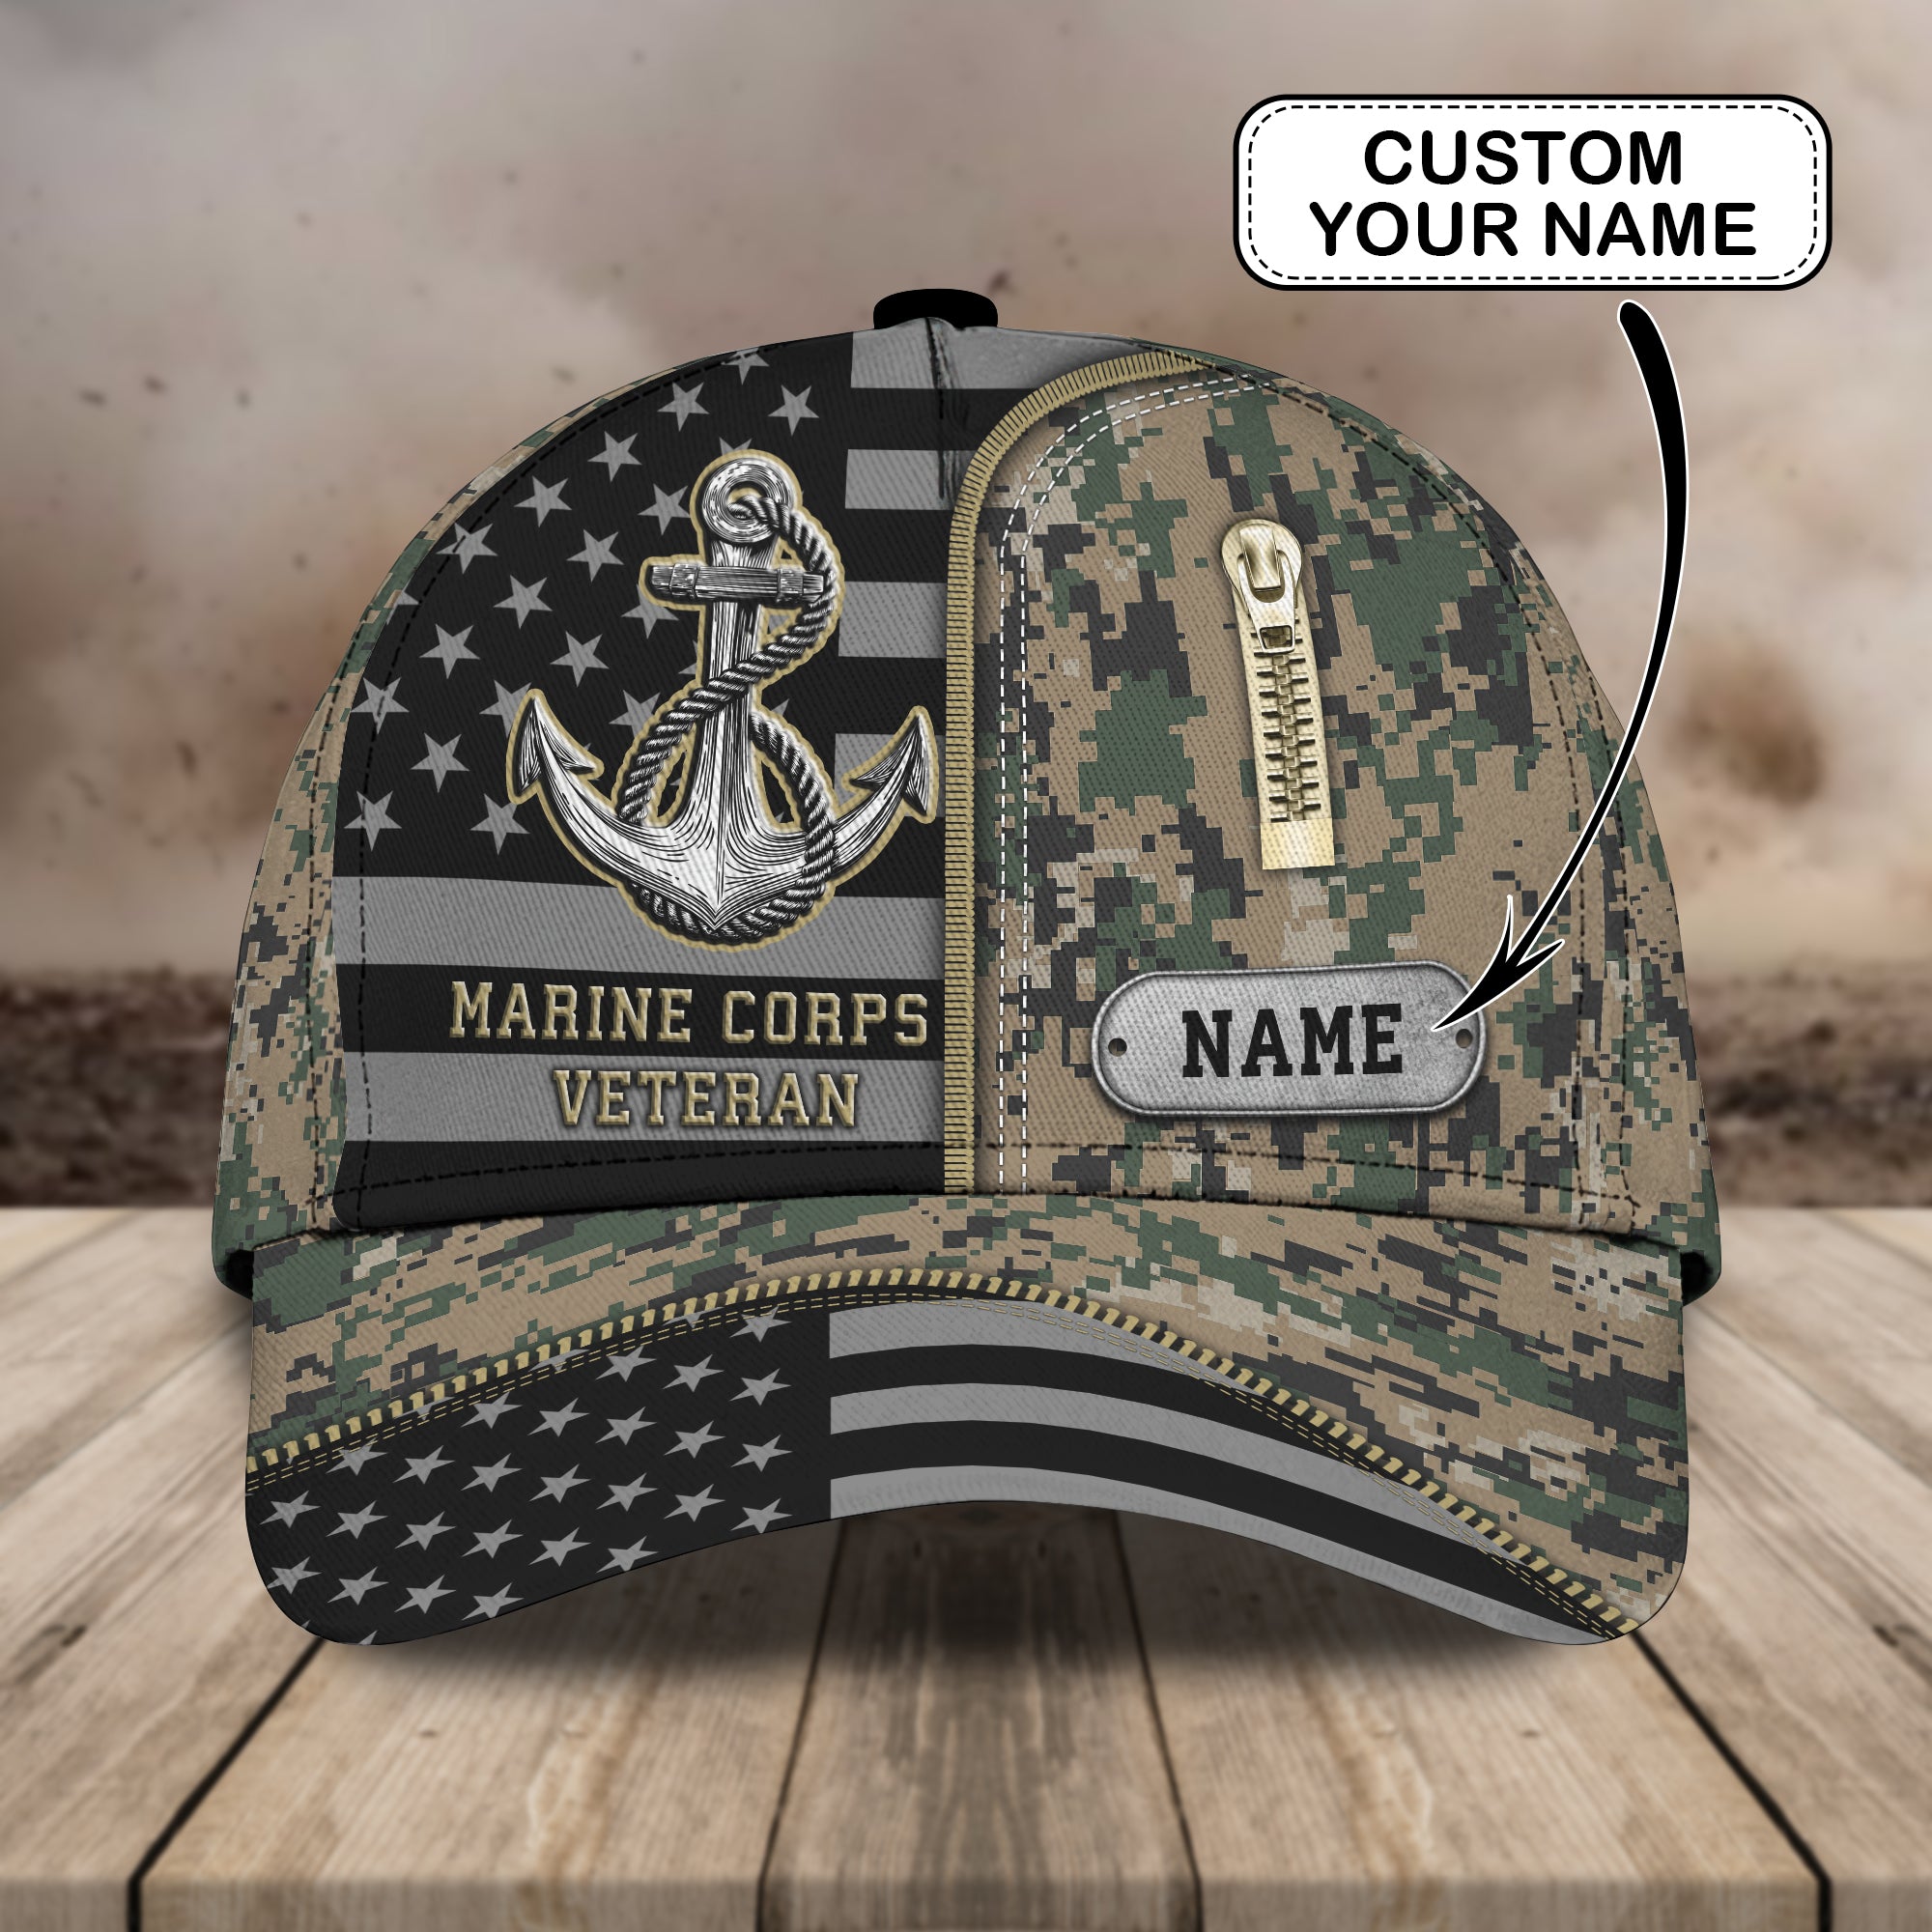 Marine Corps Veterans Cap -Loop- Personalized Name Cap - H9h3-320